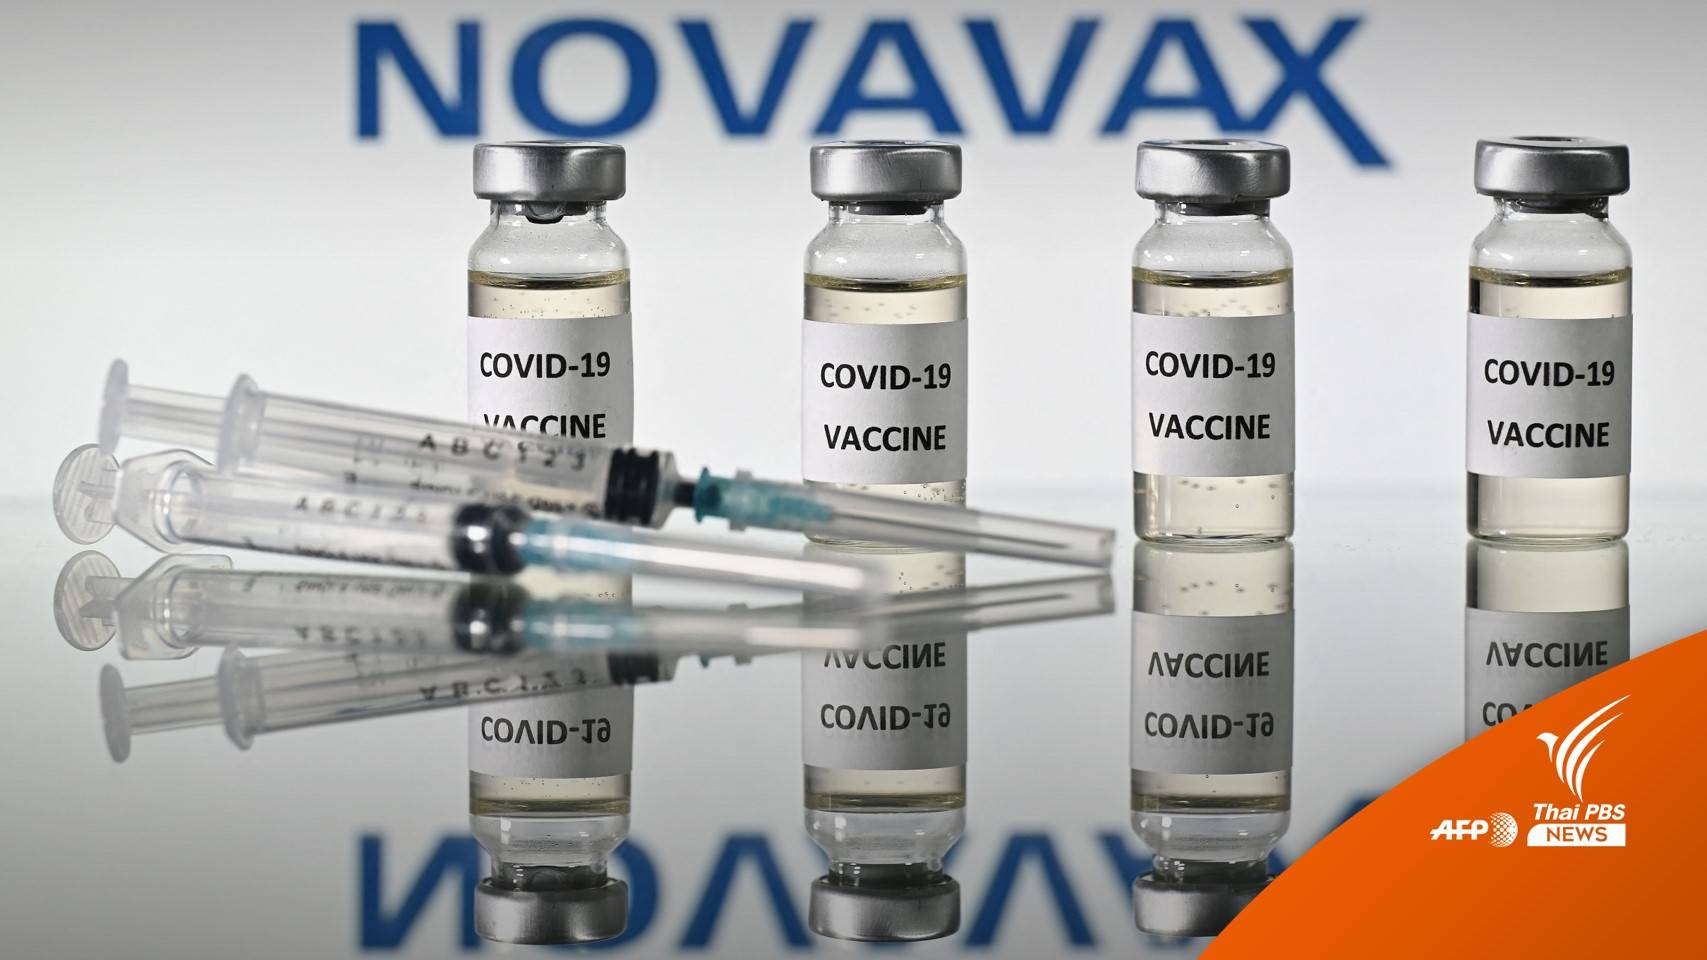 สหภาพยุโรปอนุมัติ "โนวาแวกซ์" เป็นวัคซีนตัวที่ 5